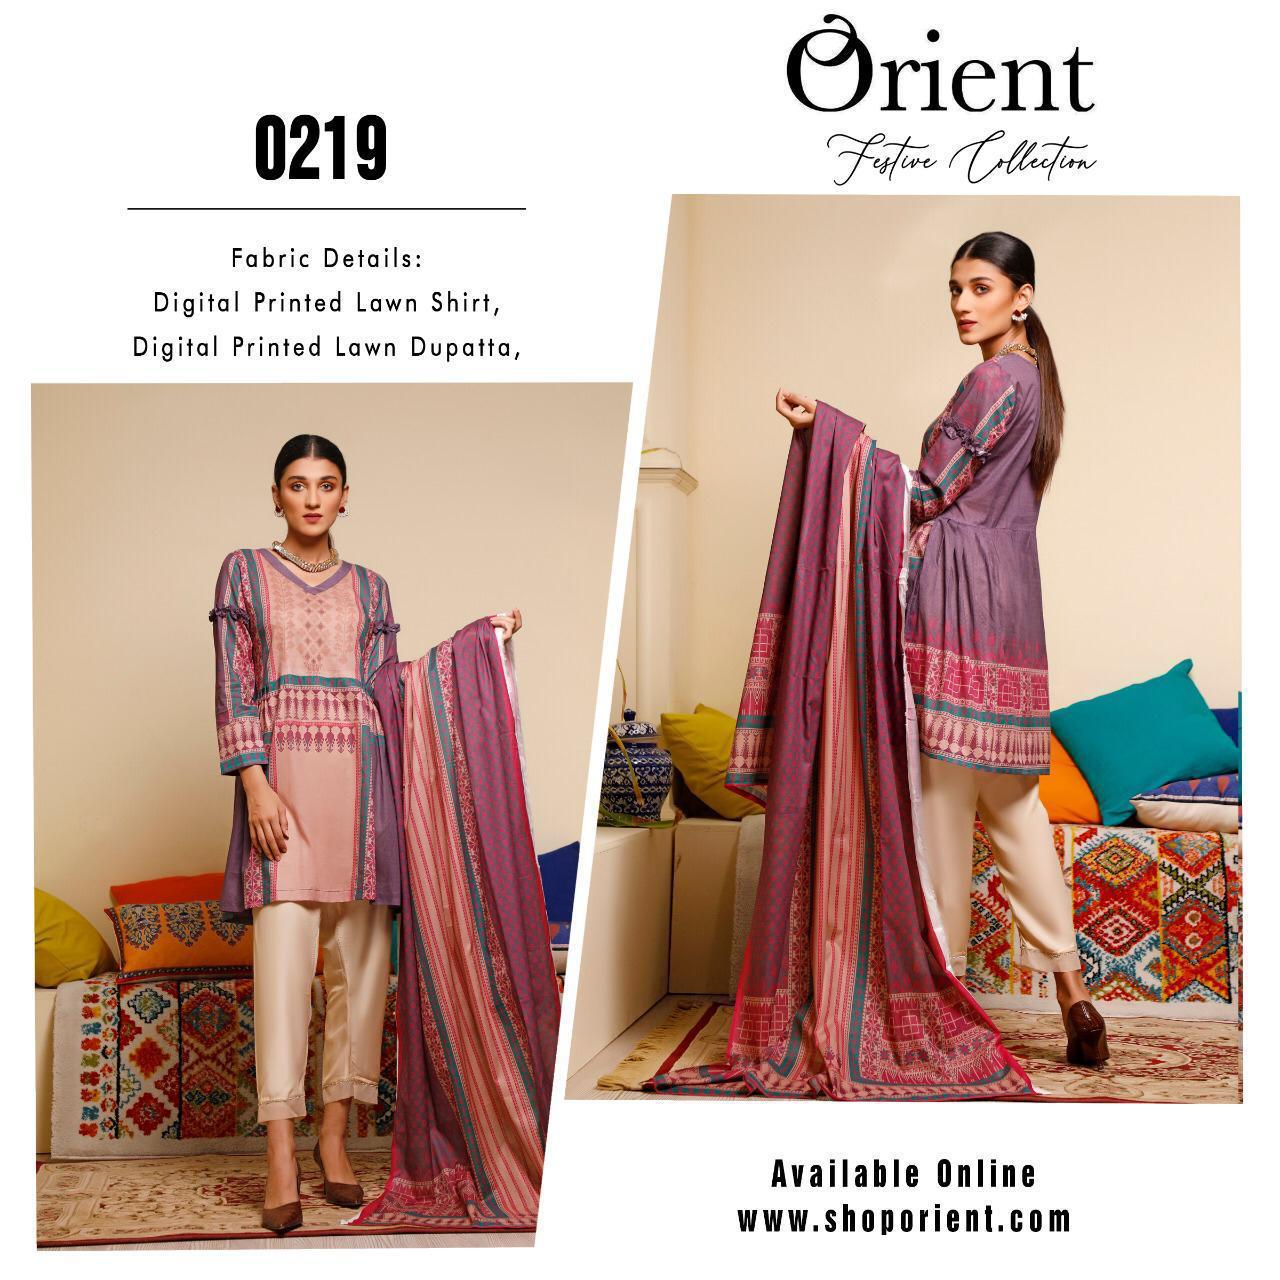 Orient Festive Collection Designer Airjet Luxury Lawn Suit With Lawn Dupatta Wholesale